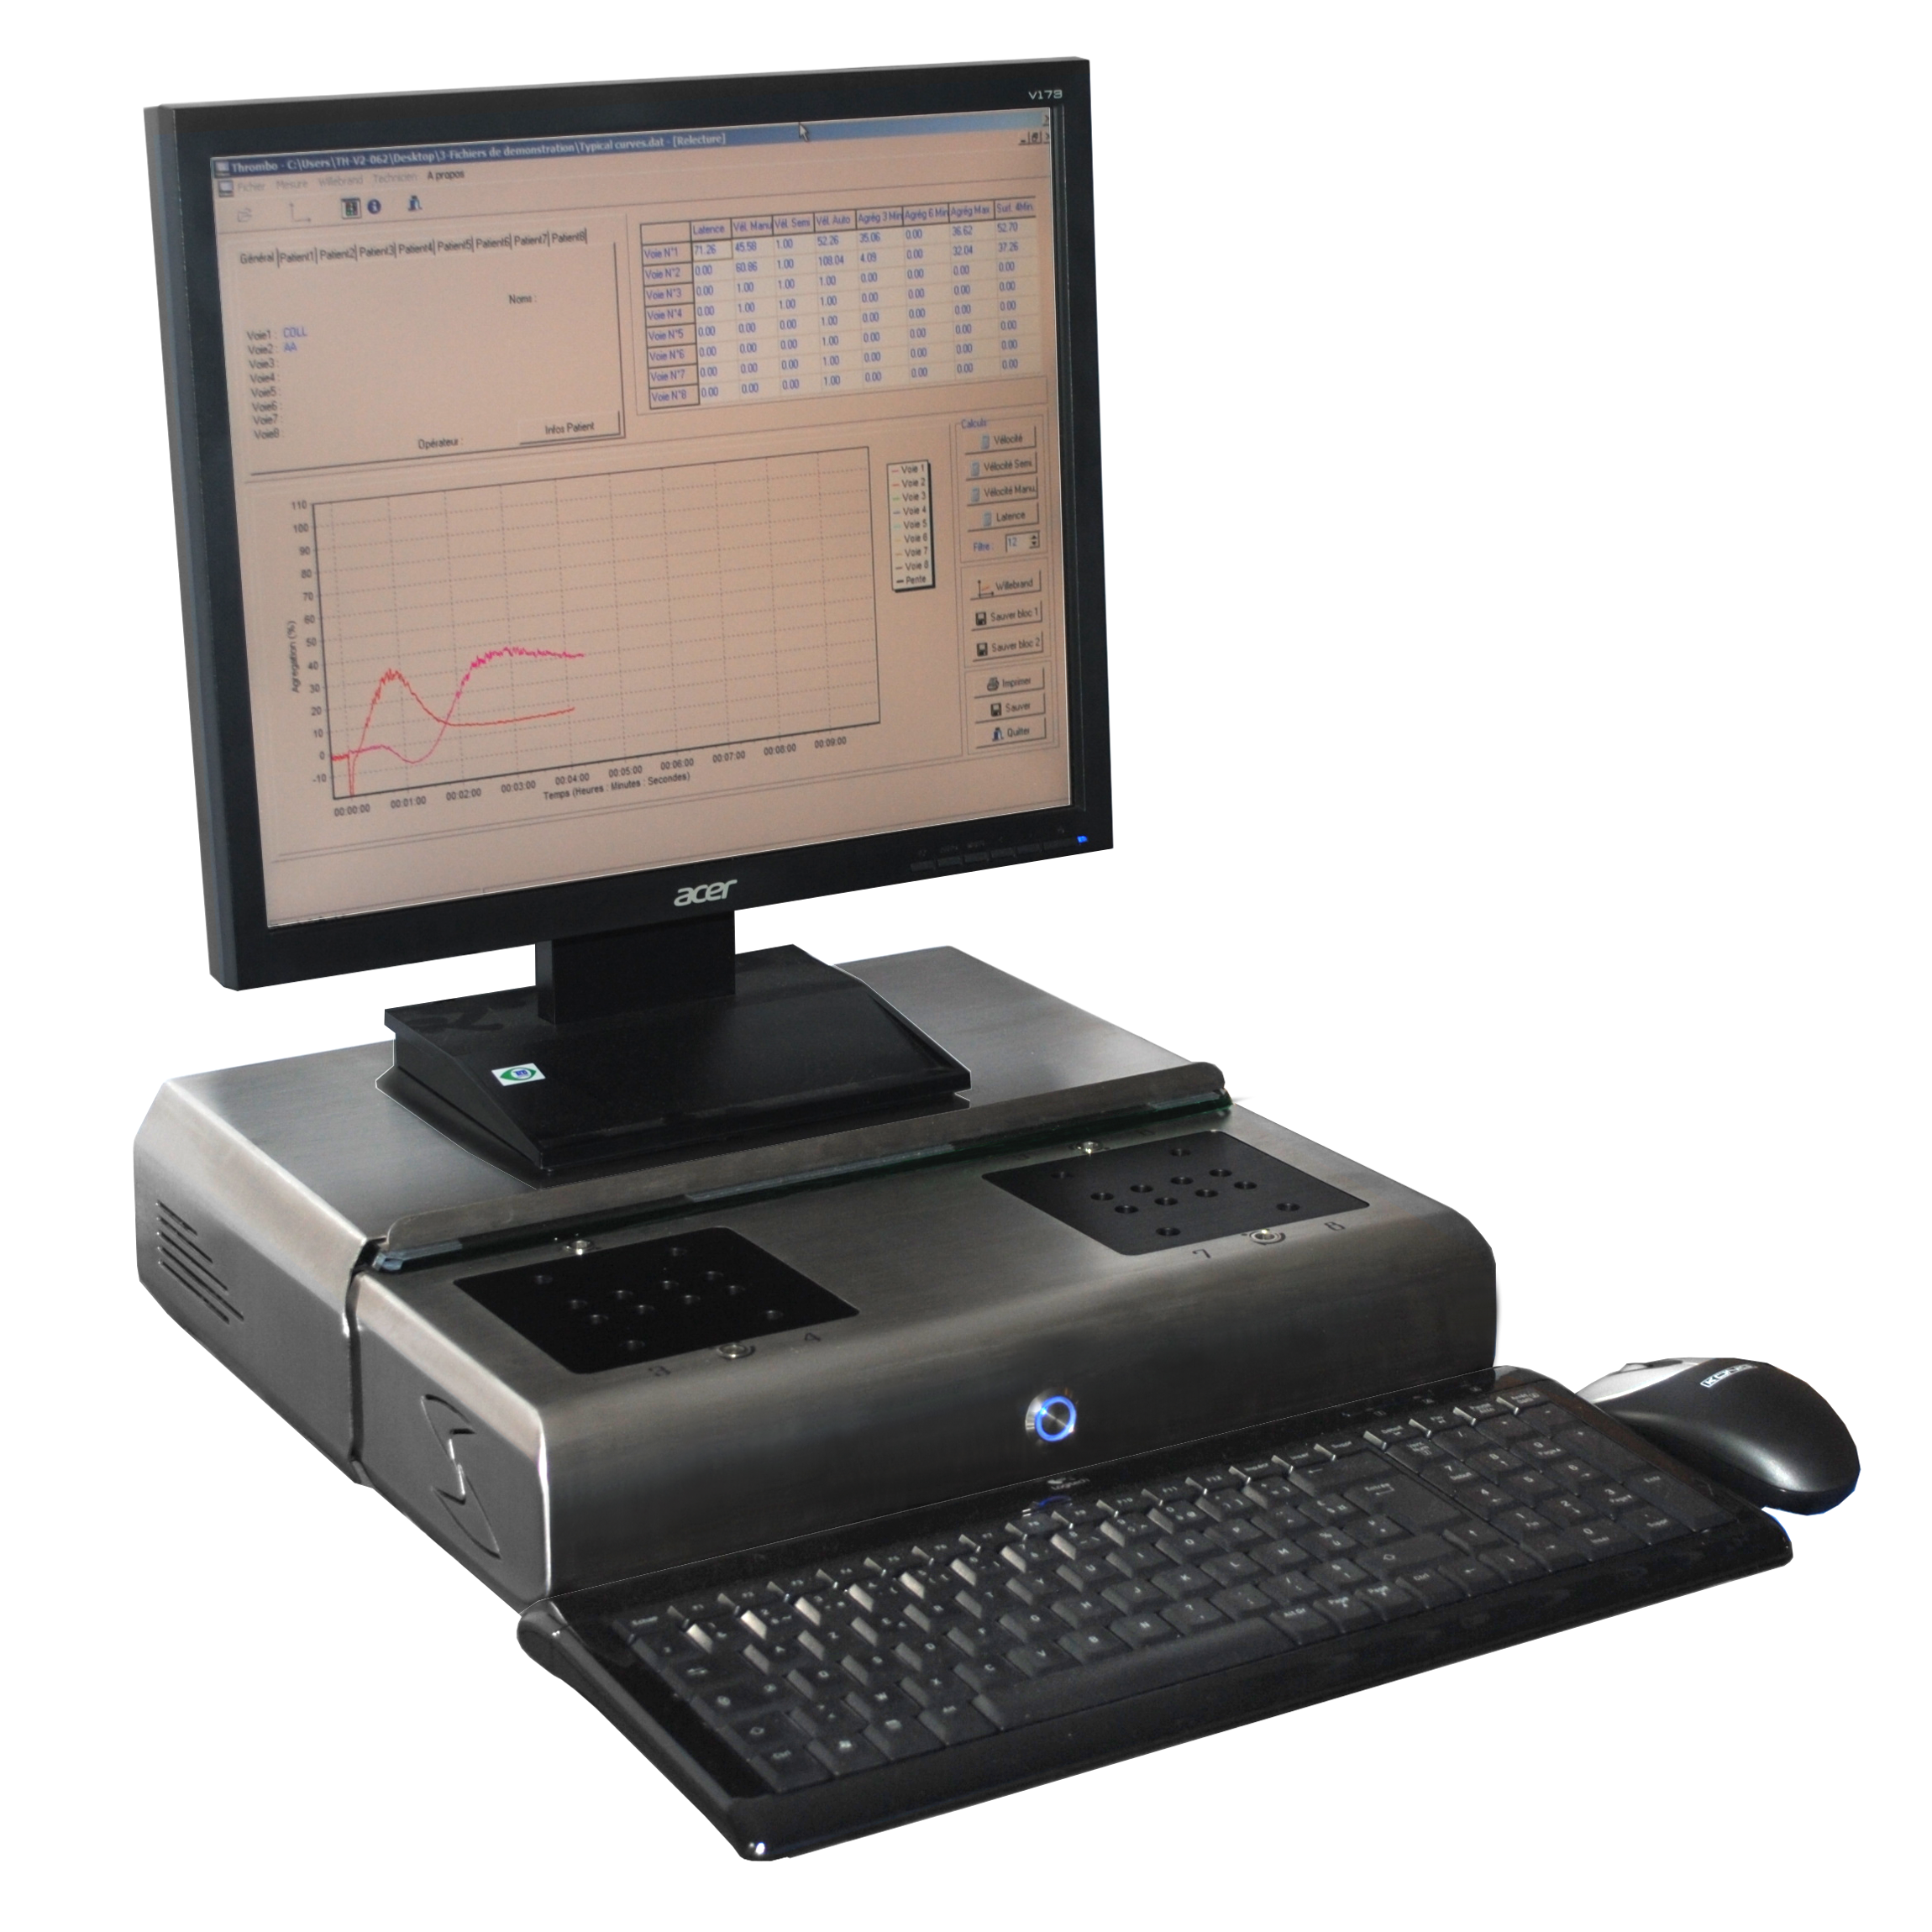 De plaatjesaggregometer van SD Medical maakt gebruik van LTA en is beschikbaar met de AgroBio reagens.